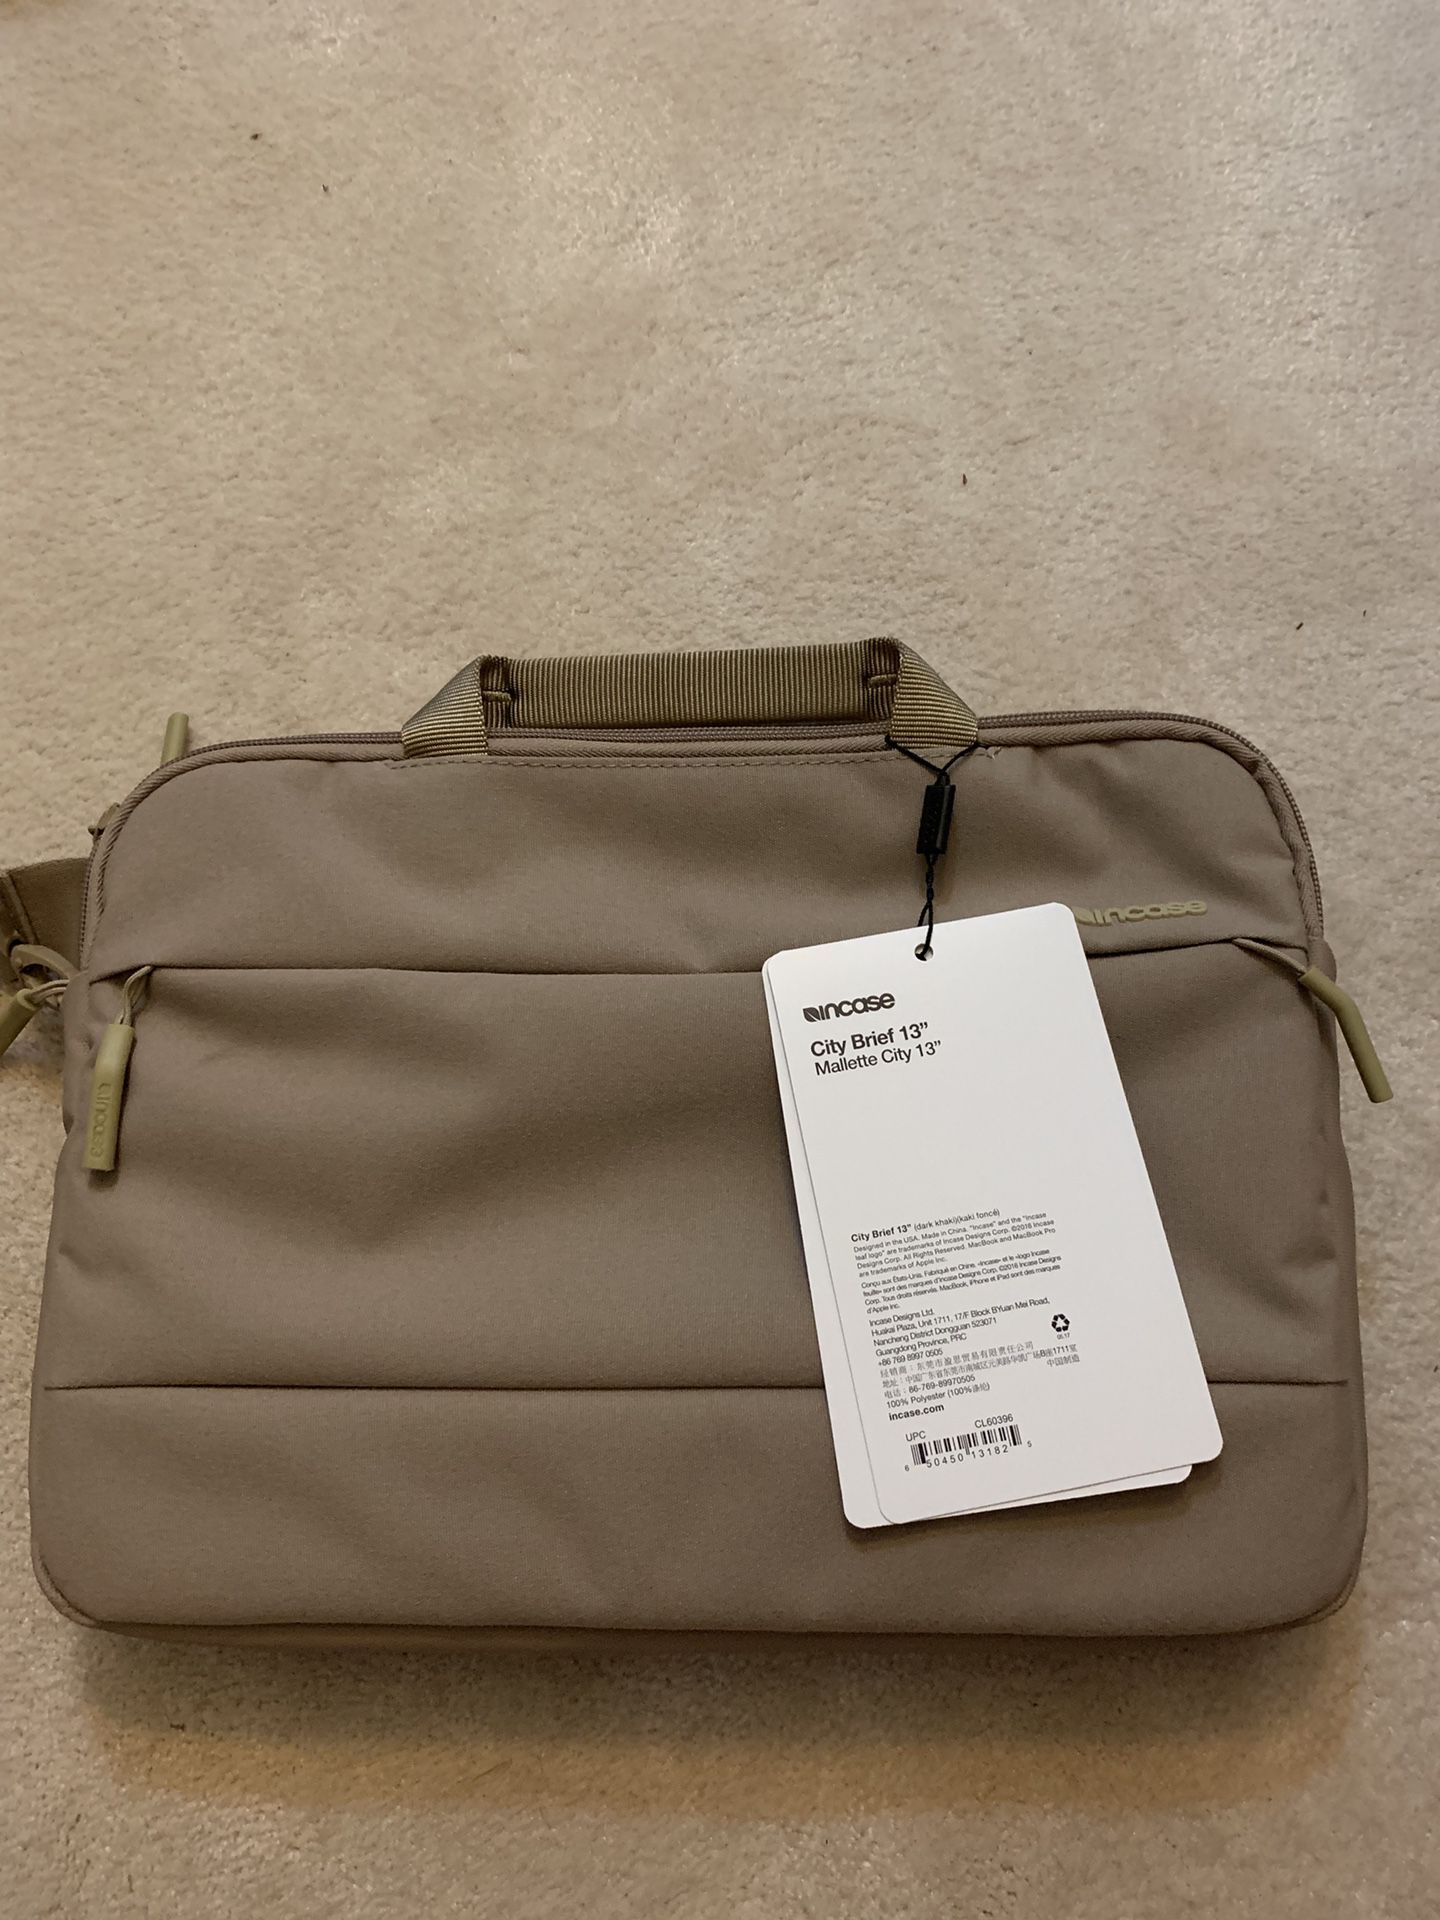 Brand new Incase 13 inch laptop bag khaki color